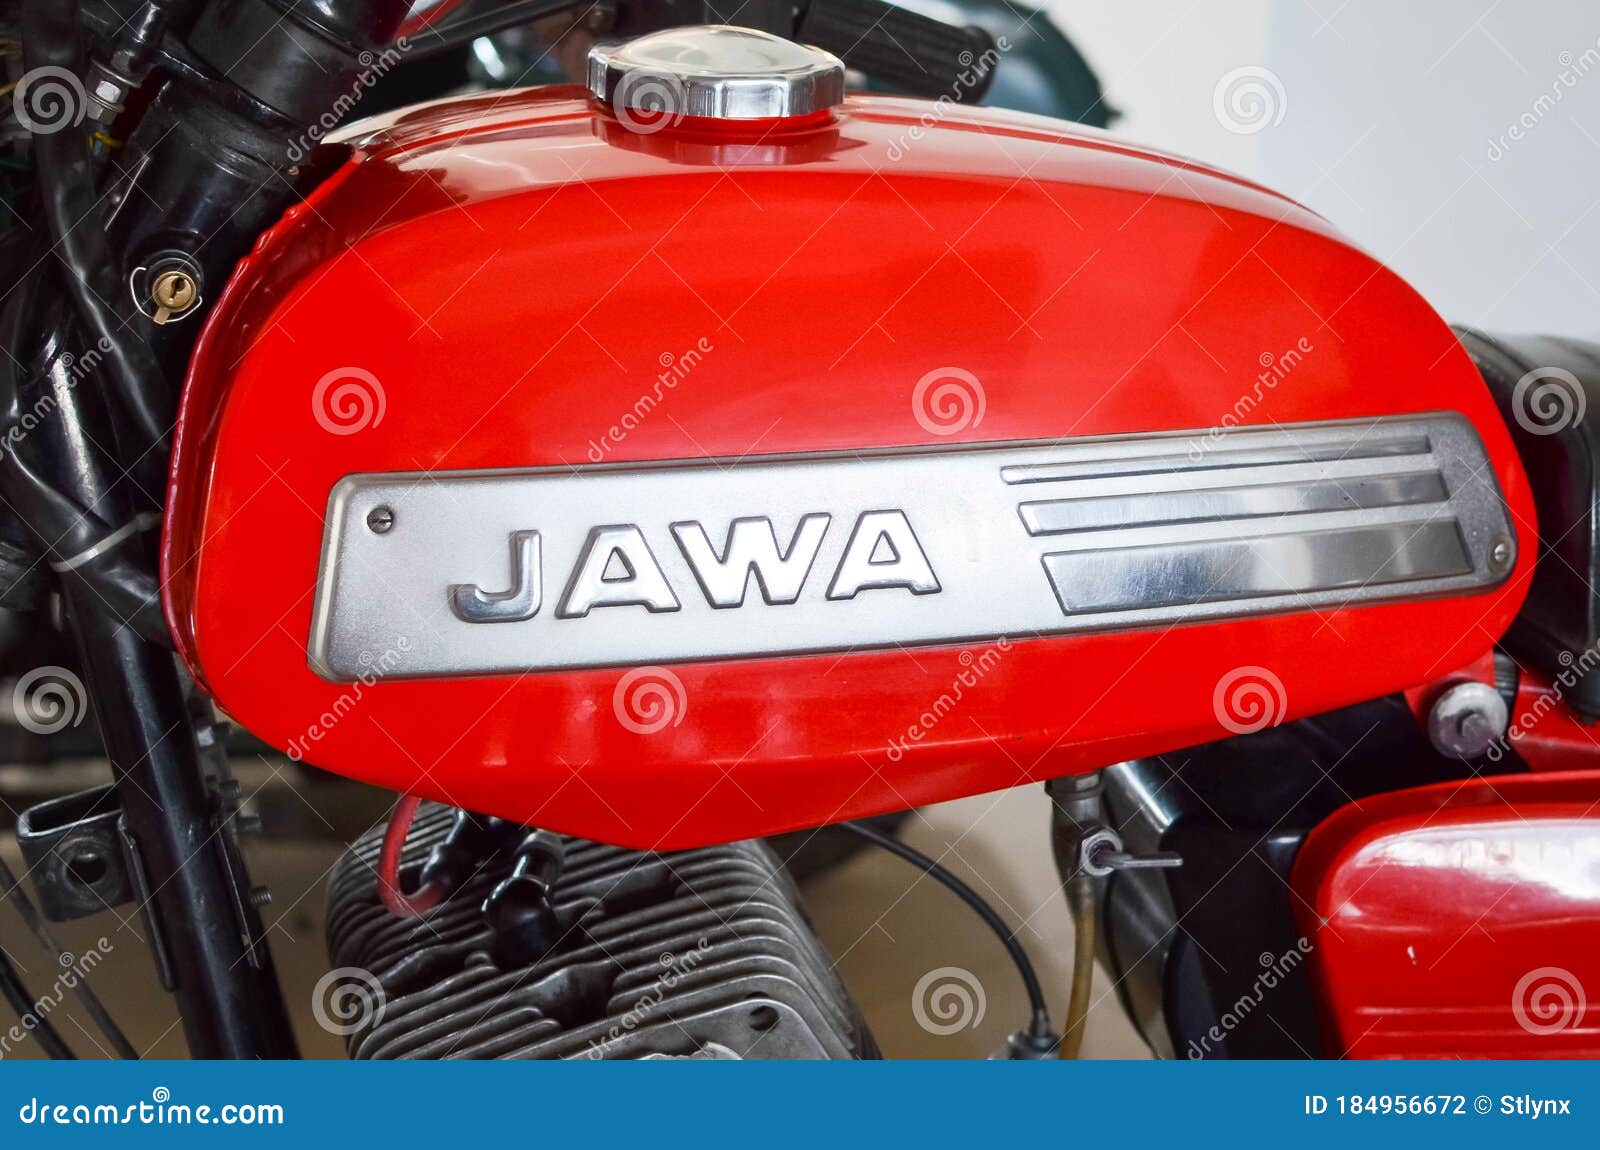 Jawa bike price India: Jawa unveils 3 new motorcycles starting Rs 1.5 lakhs